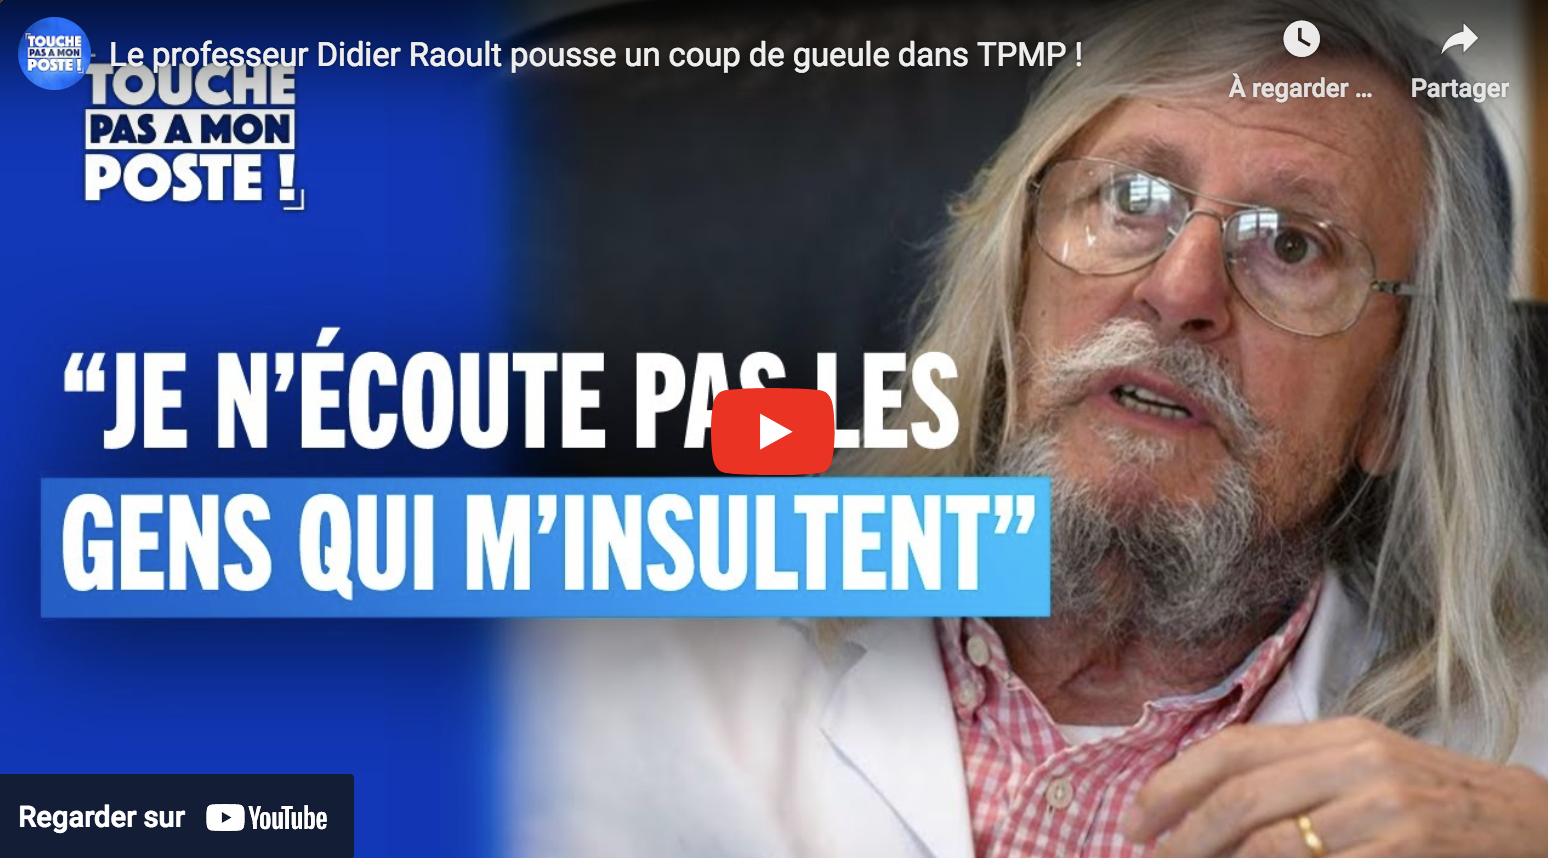 Le professeur Didier Raoult pousse un coup de gueule dans TPMP (VIDÉO)